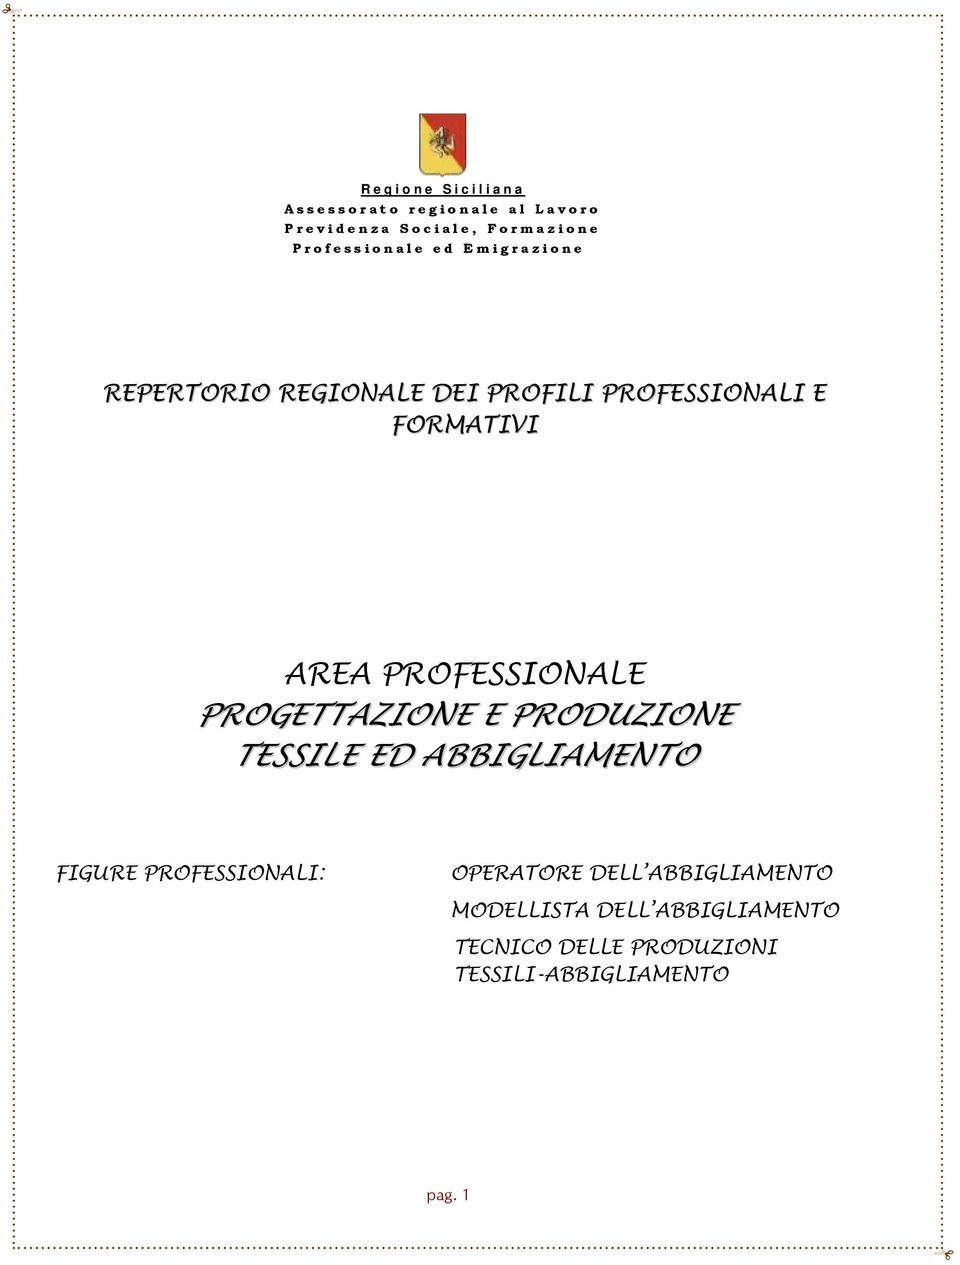 PROFESSIONALE PROGETTAZIONE E PRODUZIONE TESSILE ED ABBIGLIAMENTO FIGURE PROFESSIONALI: